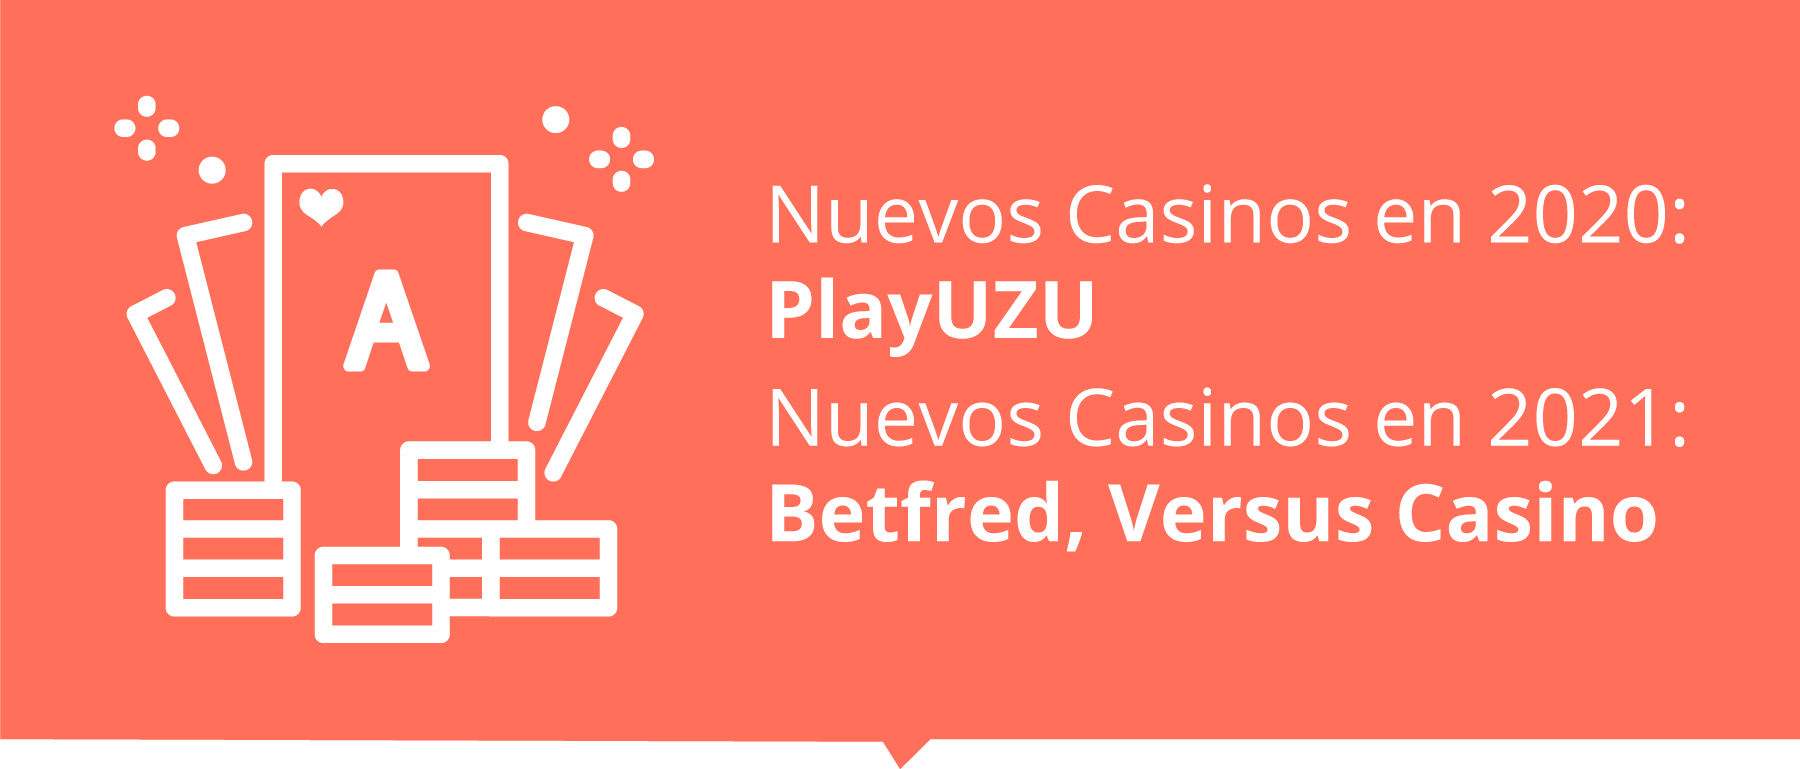 Nuevos Casinos en España